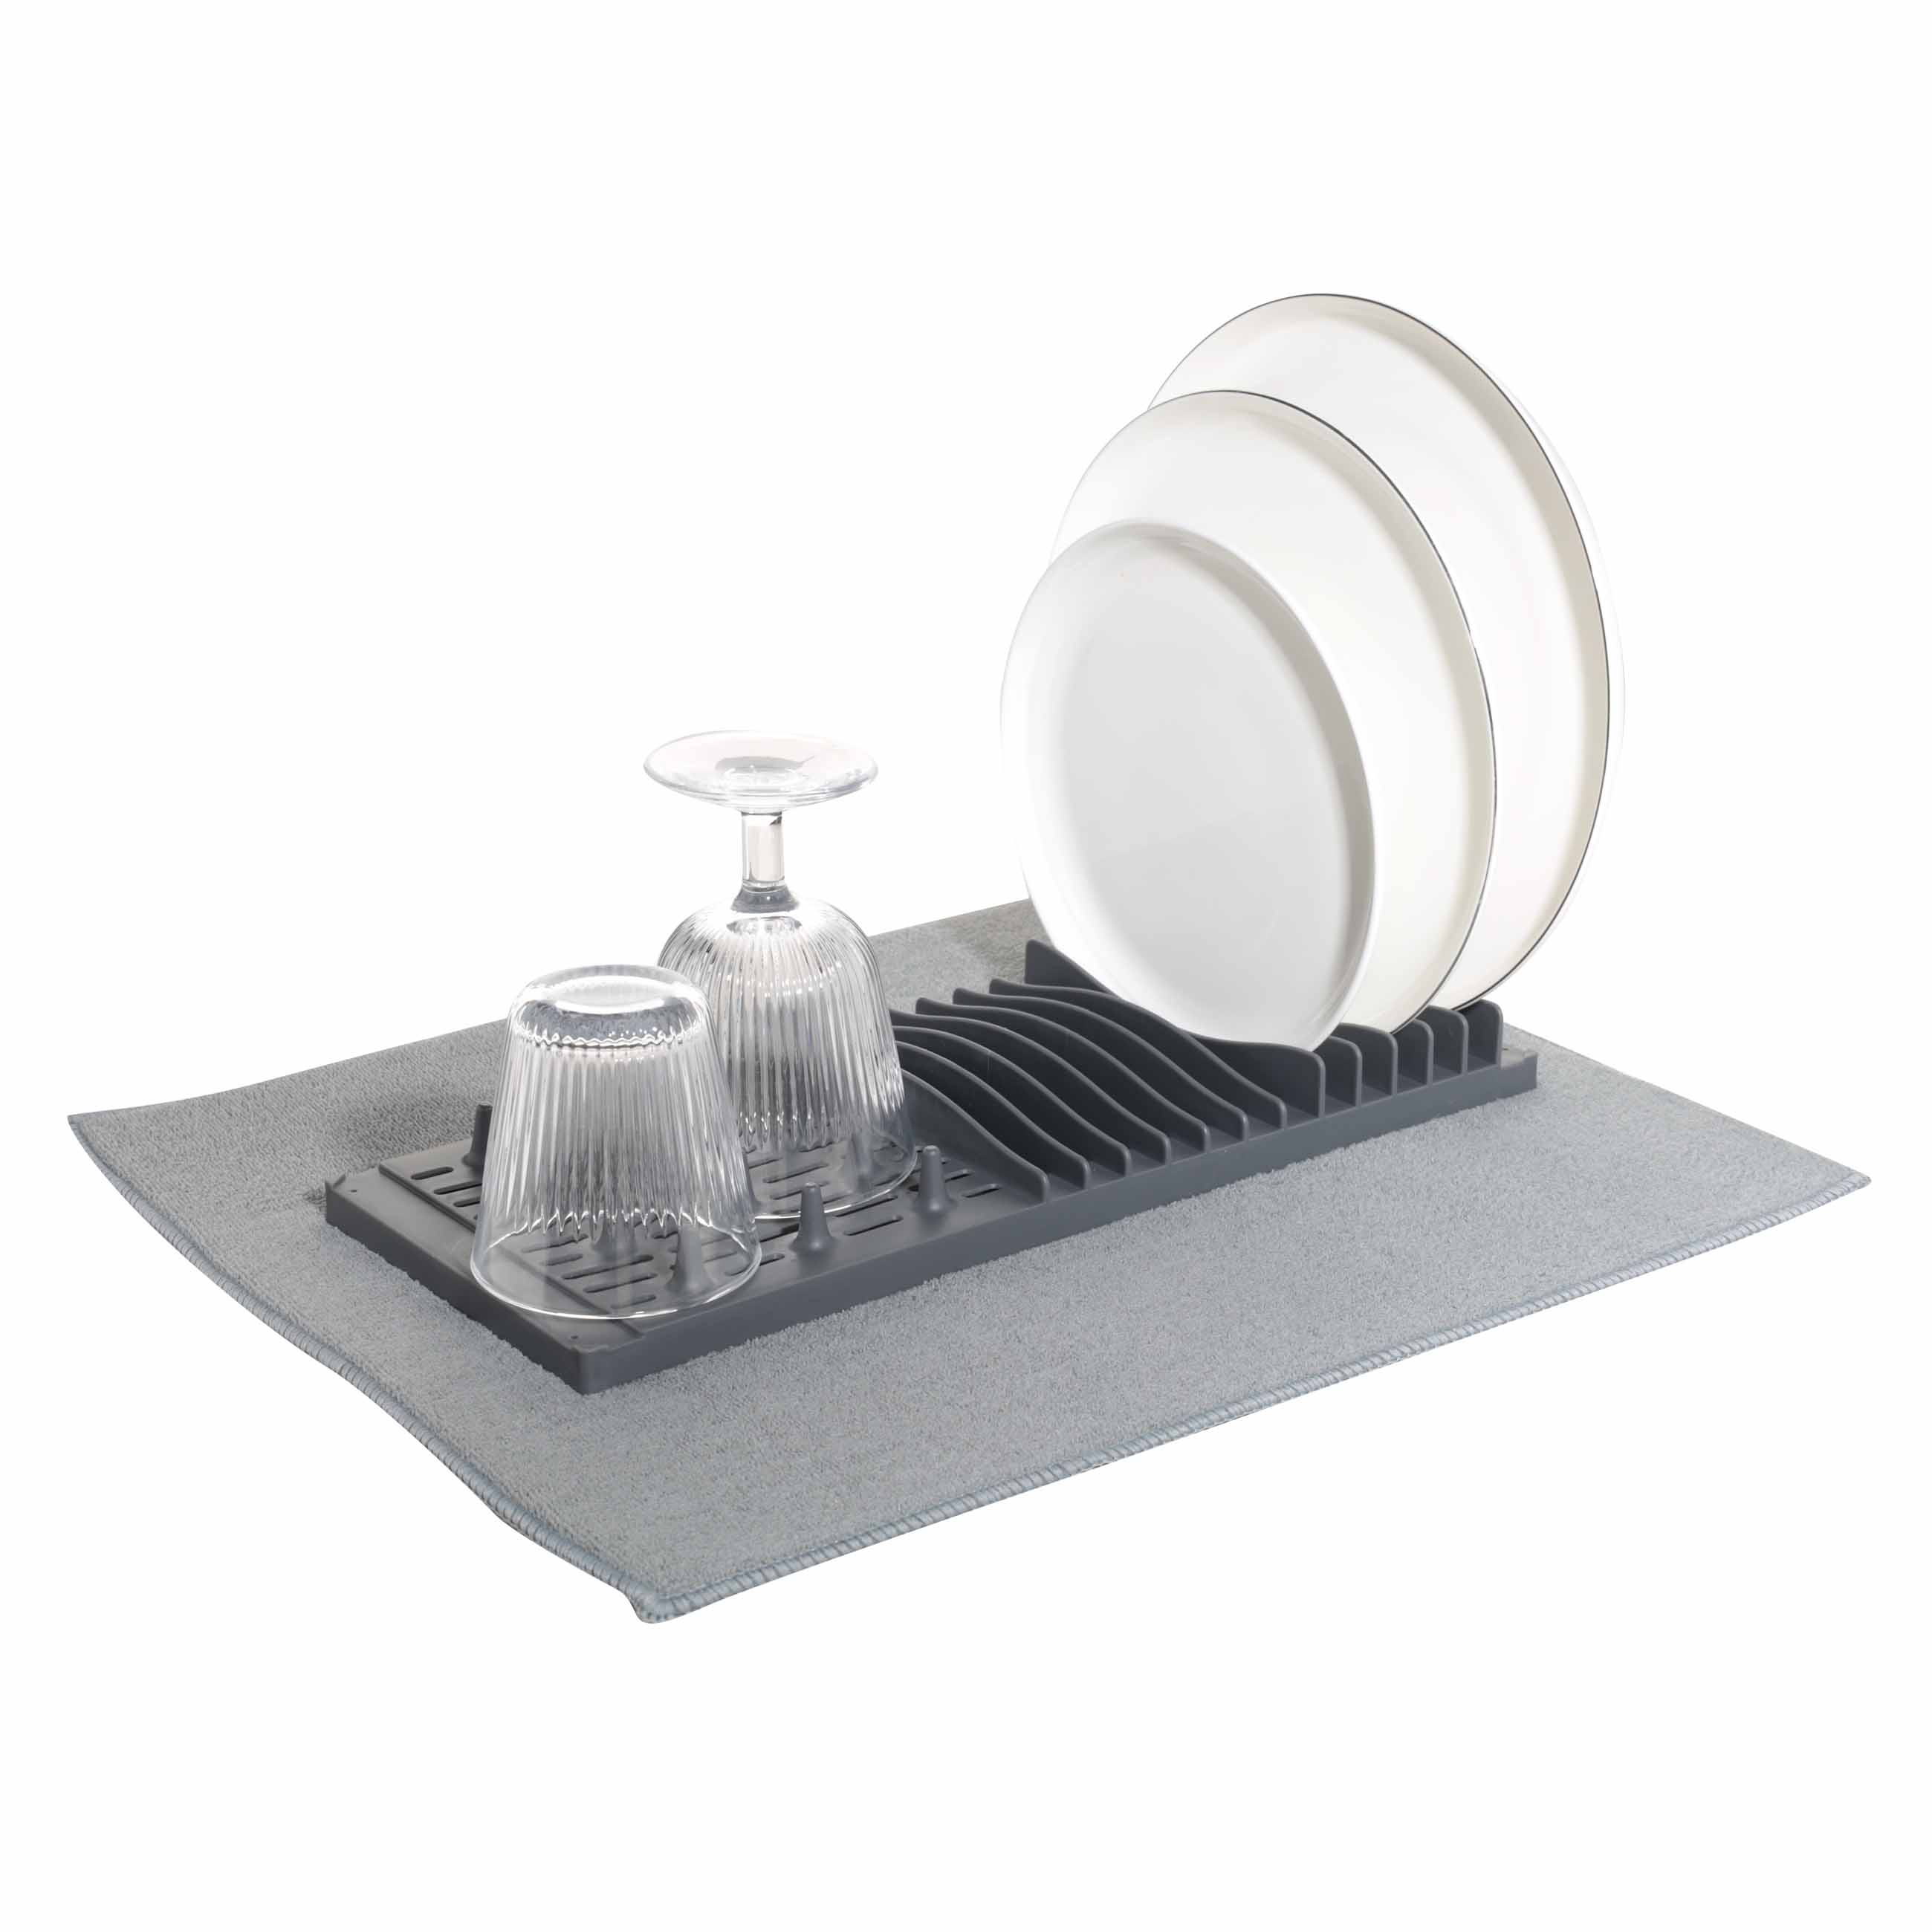 Коврик для сушки посуды с подставкой, 40х50 см, микрофибра/пластик, серый, Keeping изображение № 5